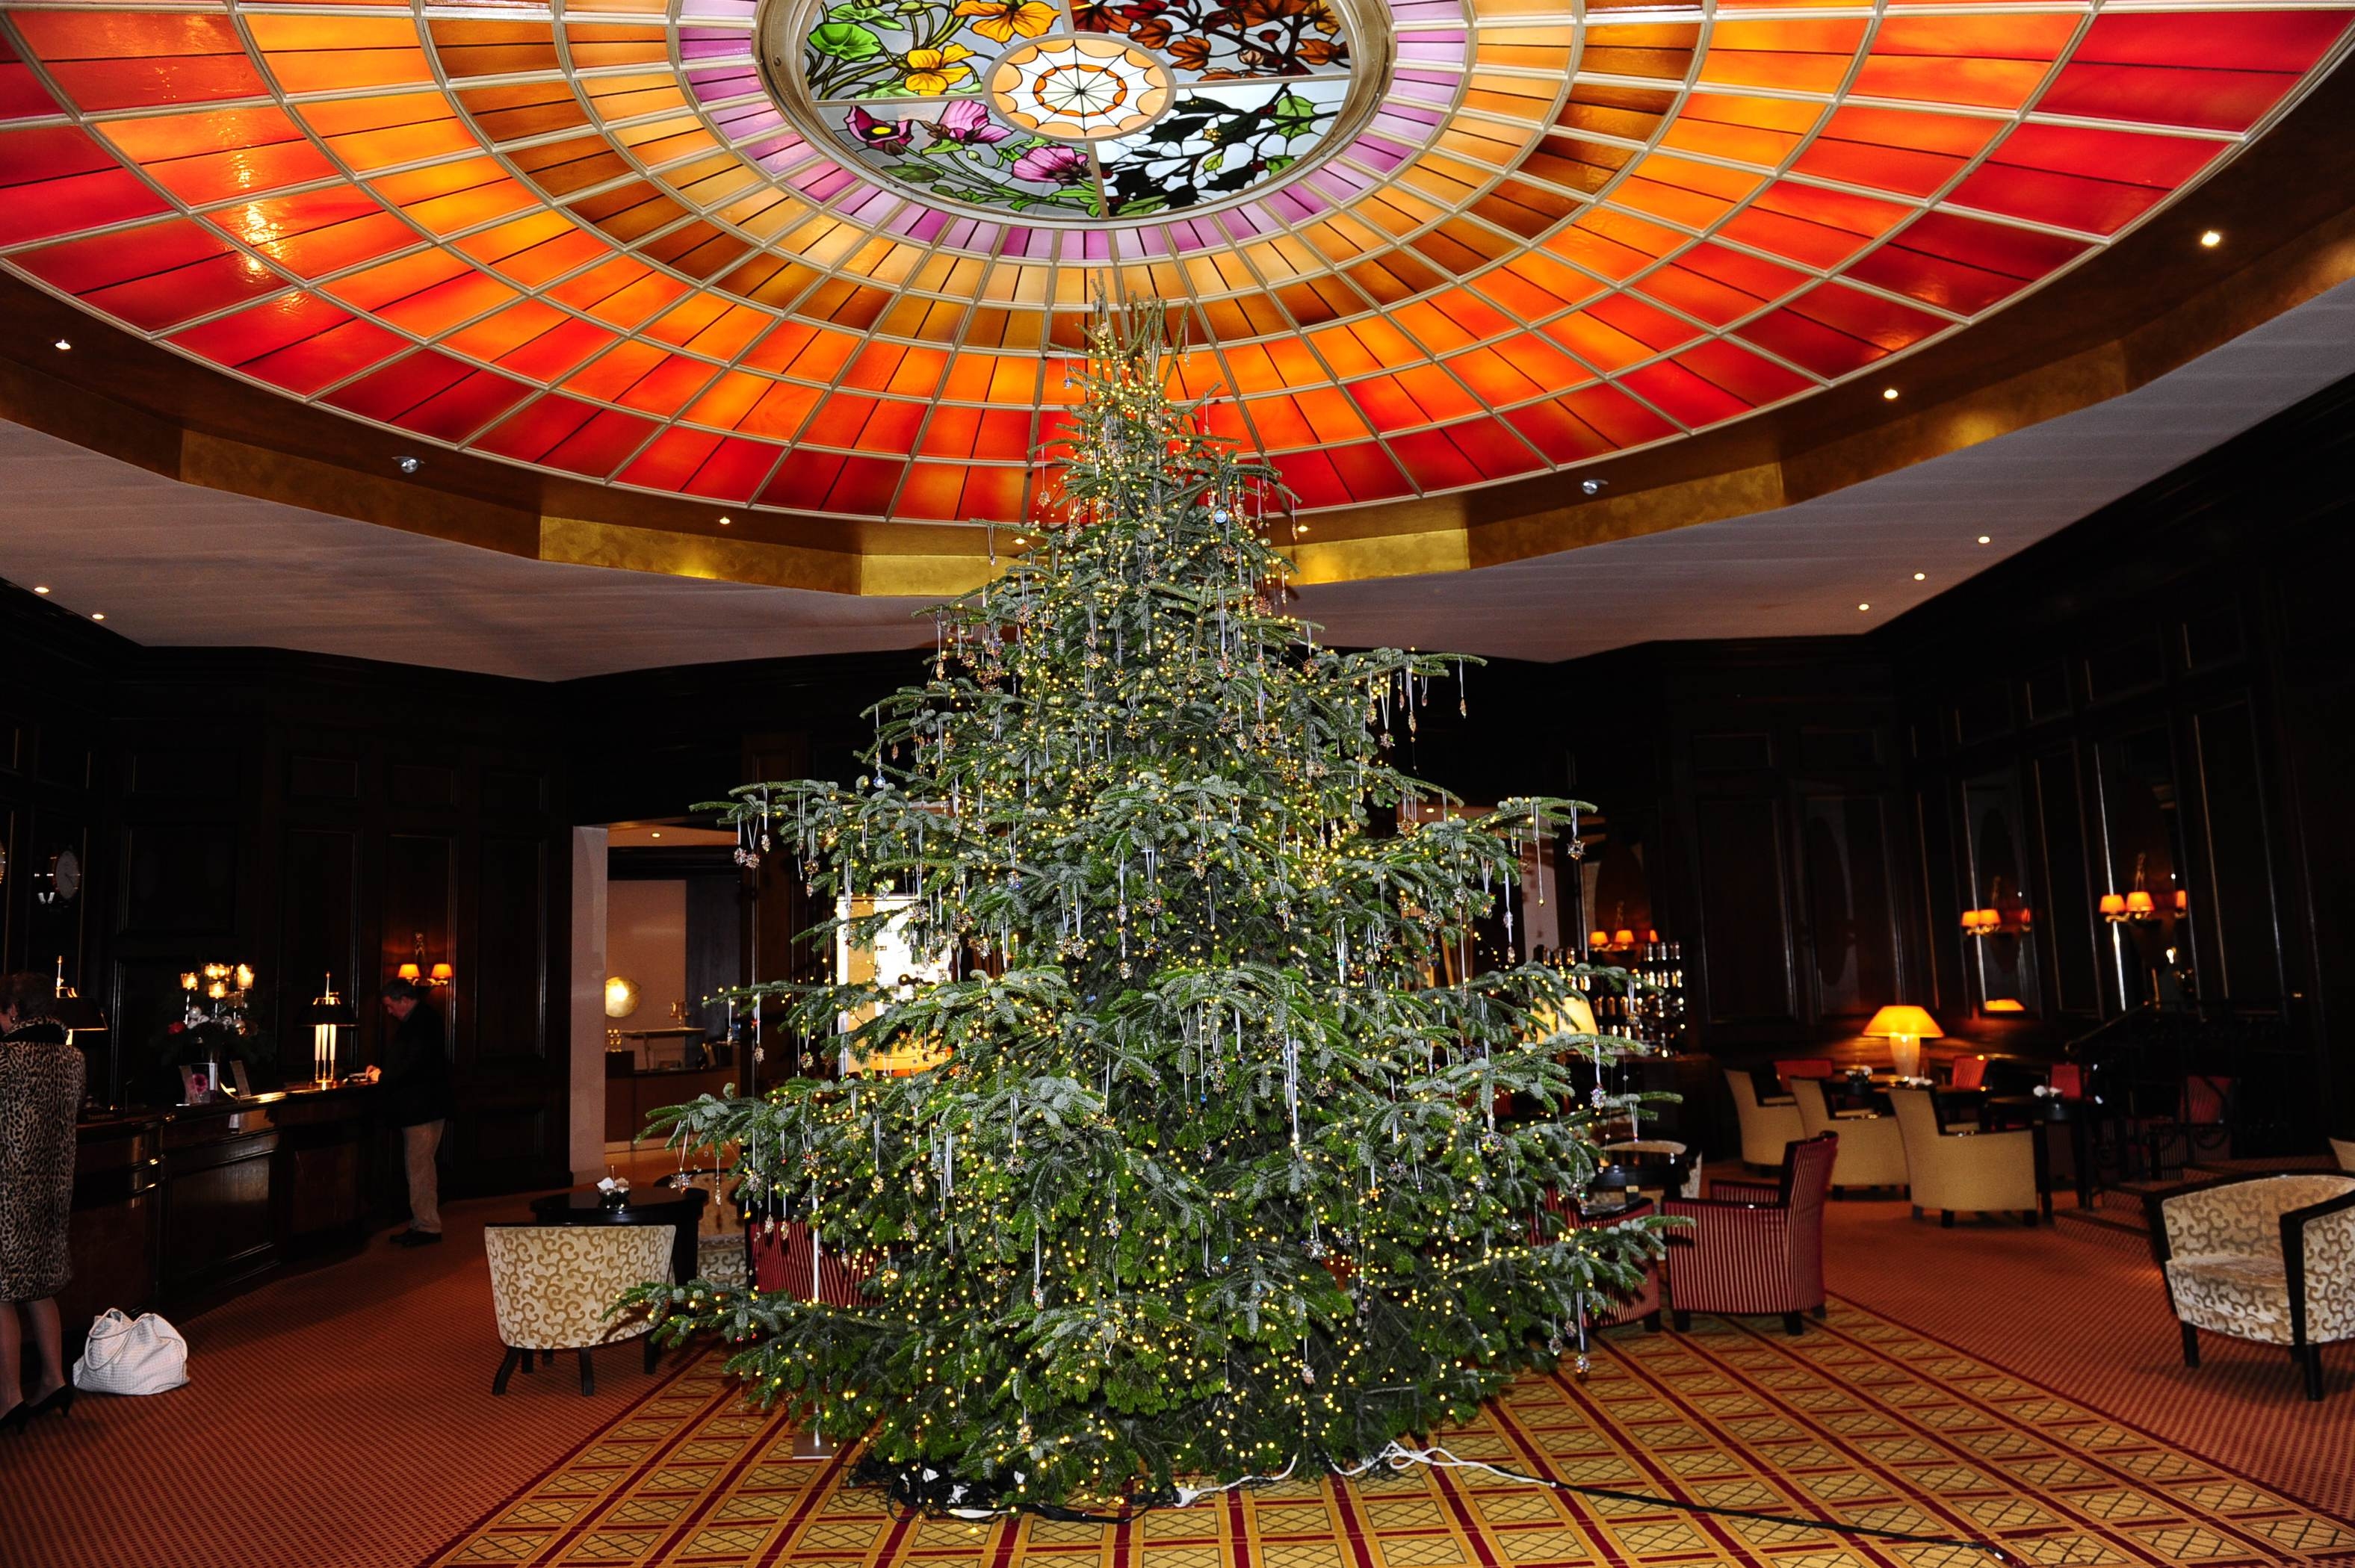 Swarowski-Weihnachtsbaum in der Lobby des Leading Hotel Vier Jahreszeiten Kempinski München: 2.000 Kristalle im Wert von 100.000 Euro